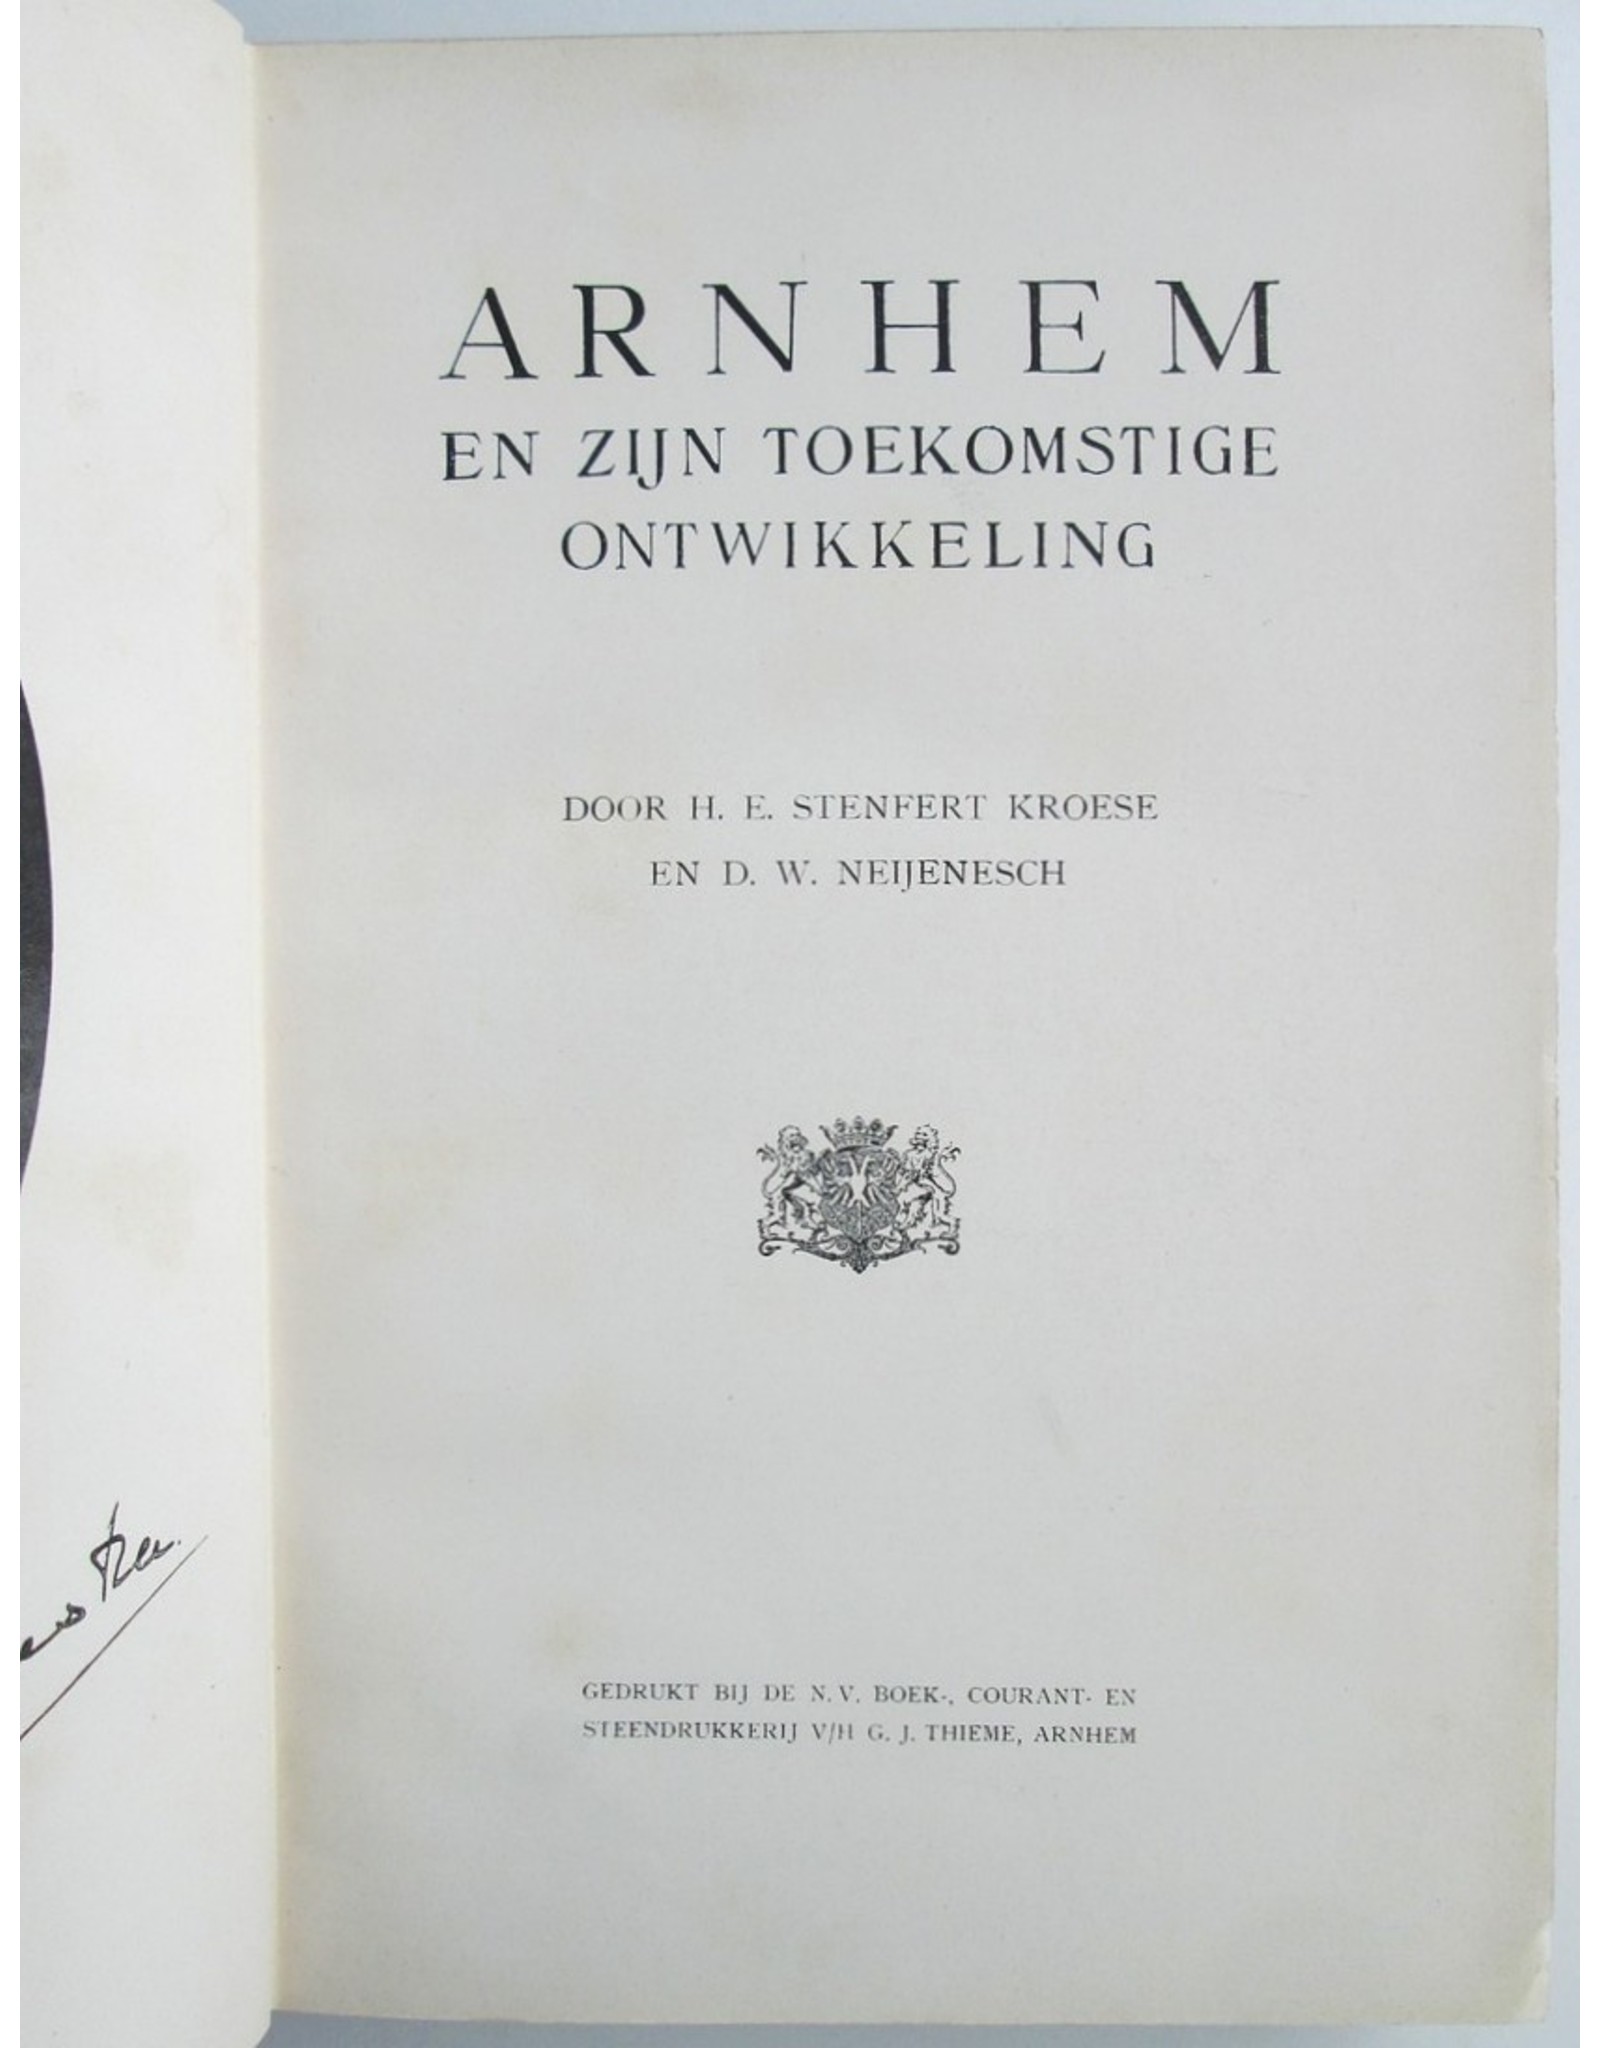 Arnhem en zijn toekomstige ontwikkeling. Door H.E. Stenfert Kroese en D.W. Neijenesch